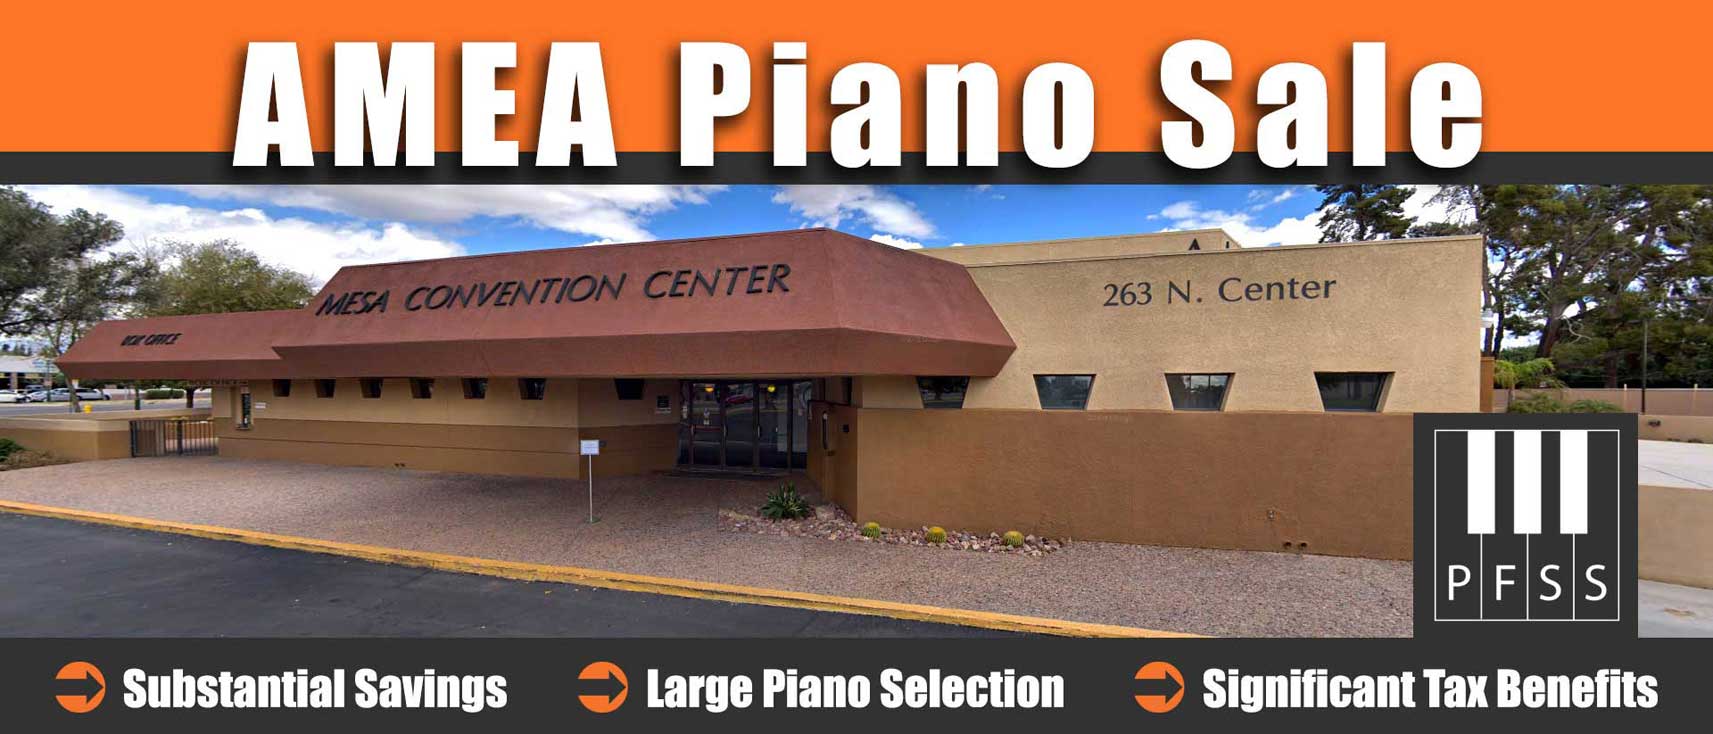 AMEA Piano Sale in Mesa, Arizona